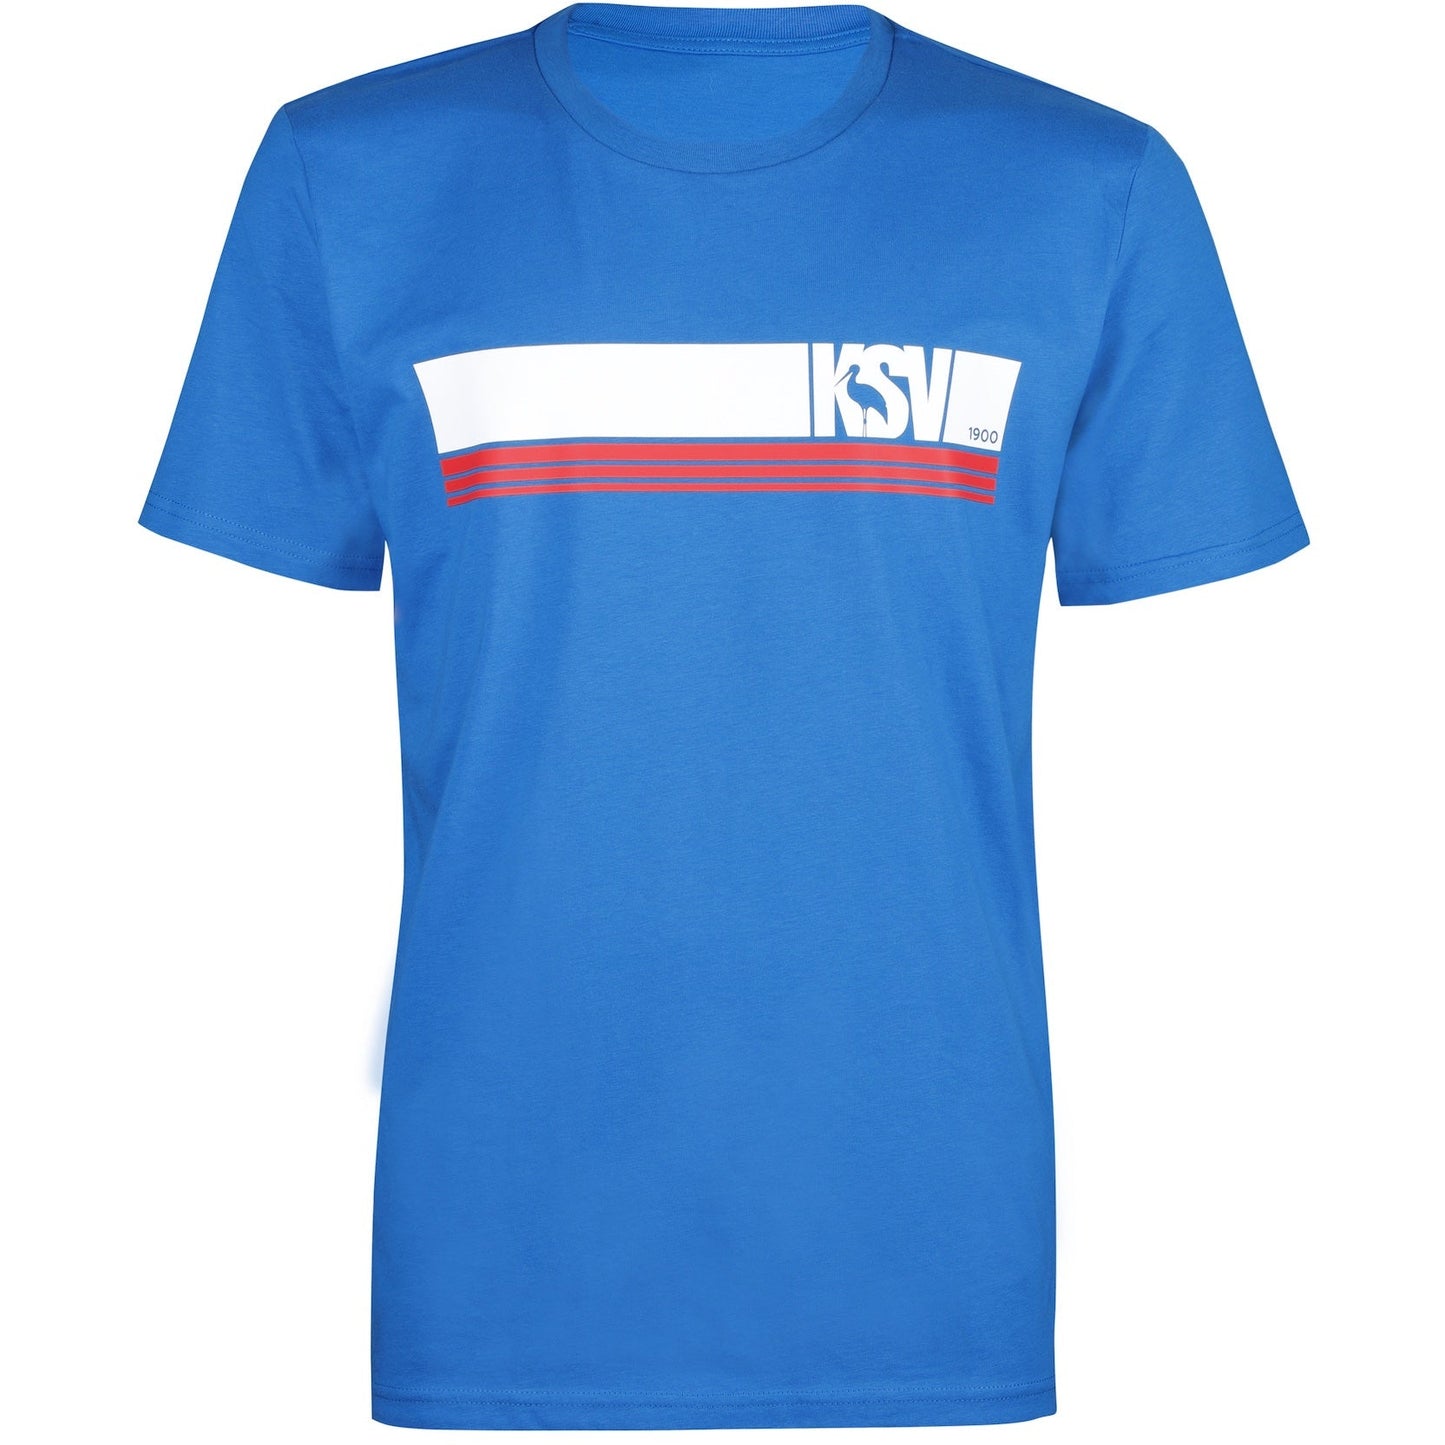 Holstein Kiel T-Shirt KSV royal